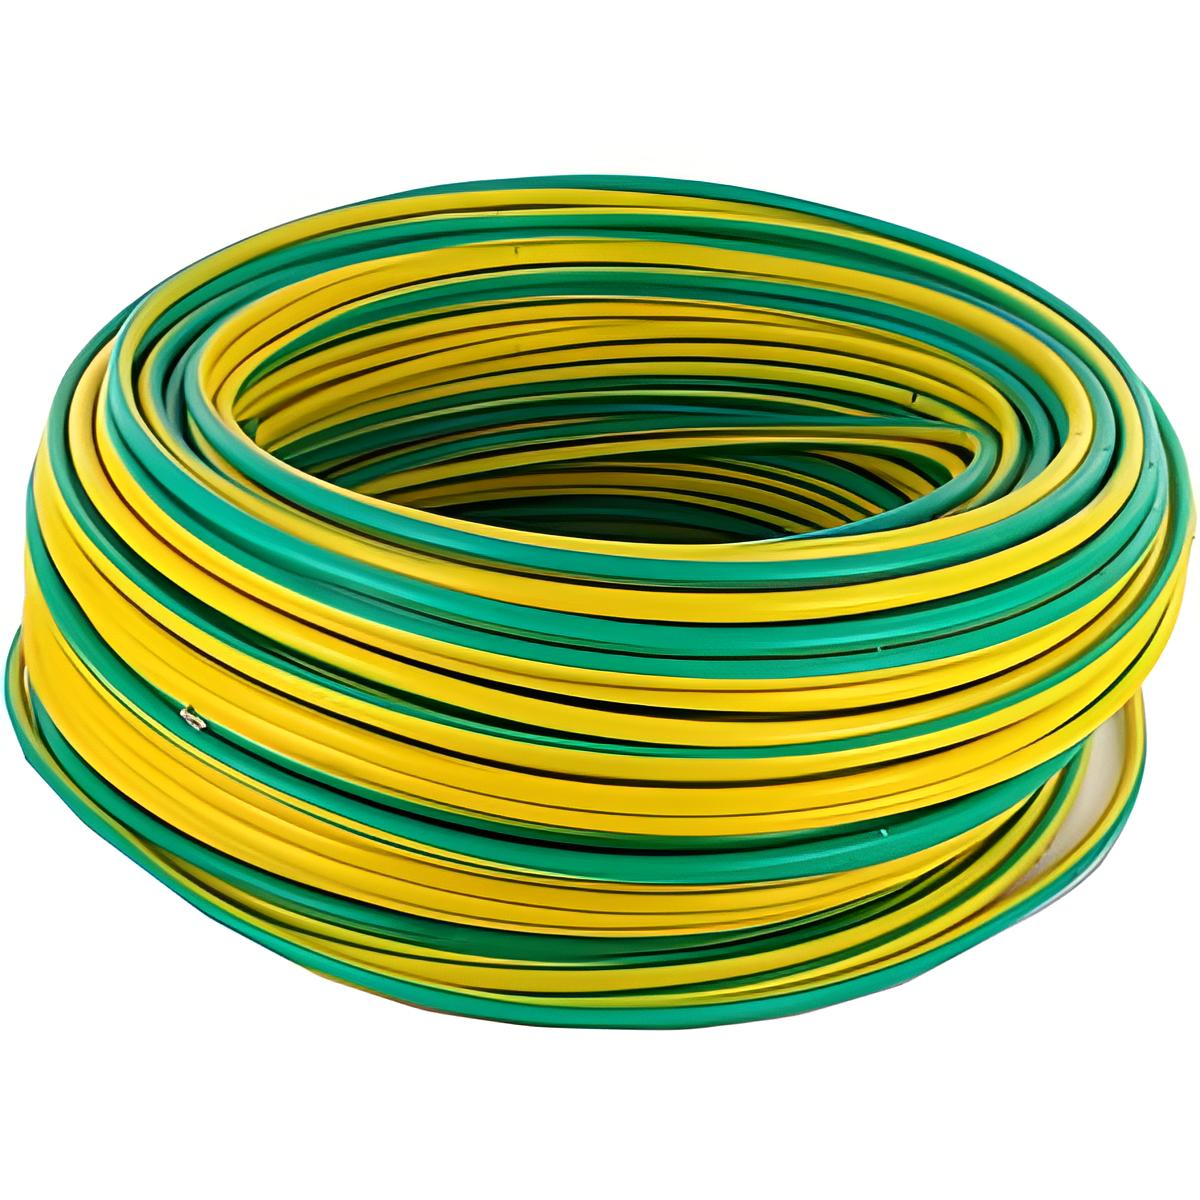 Rouleau de câble/fil T.H 1.5mm² - Supercâble JAUNE-VERT 100m